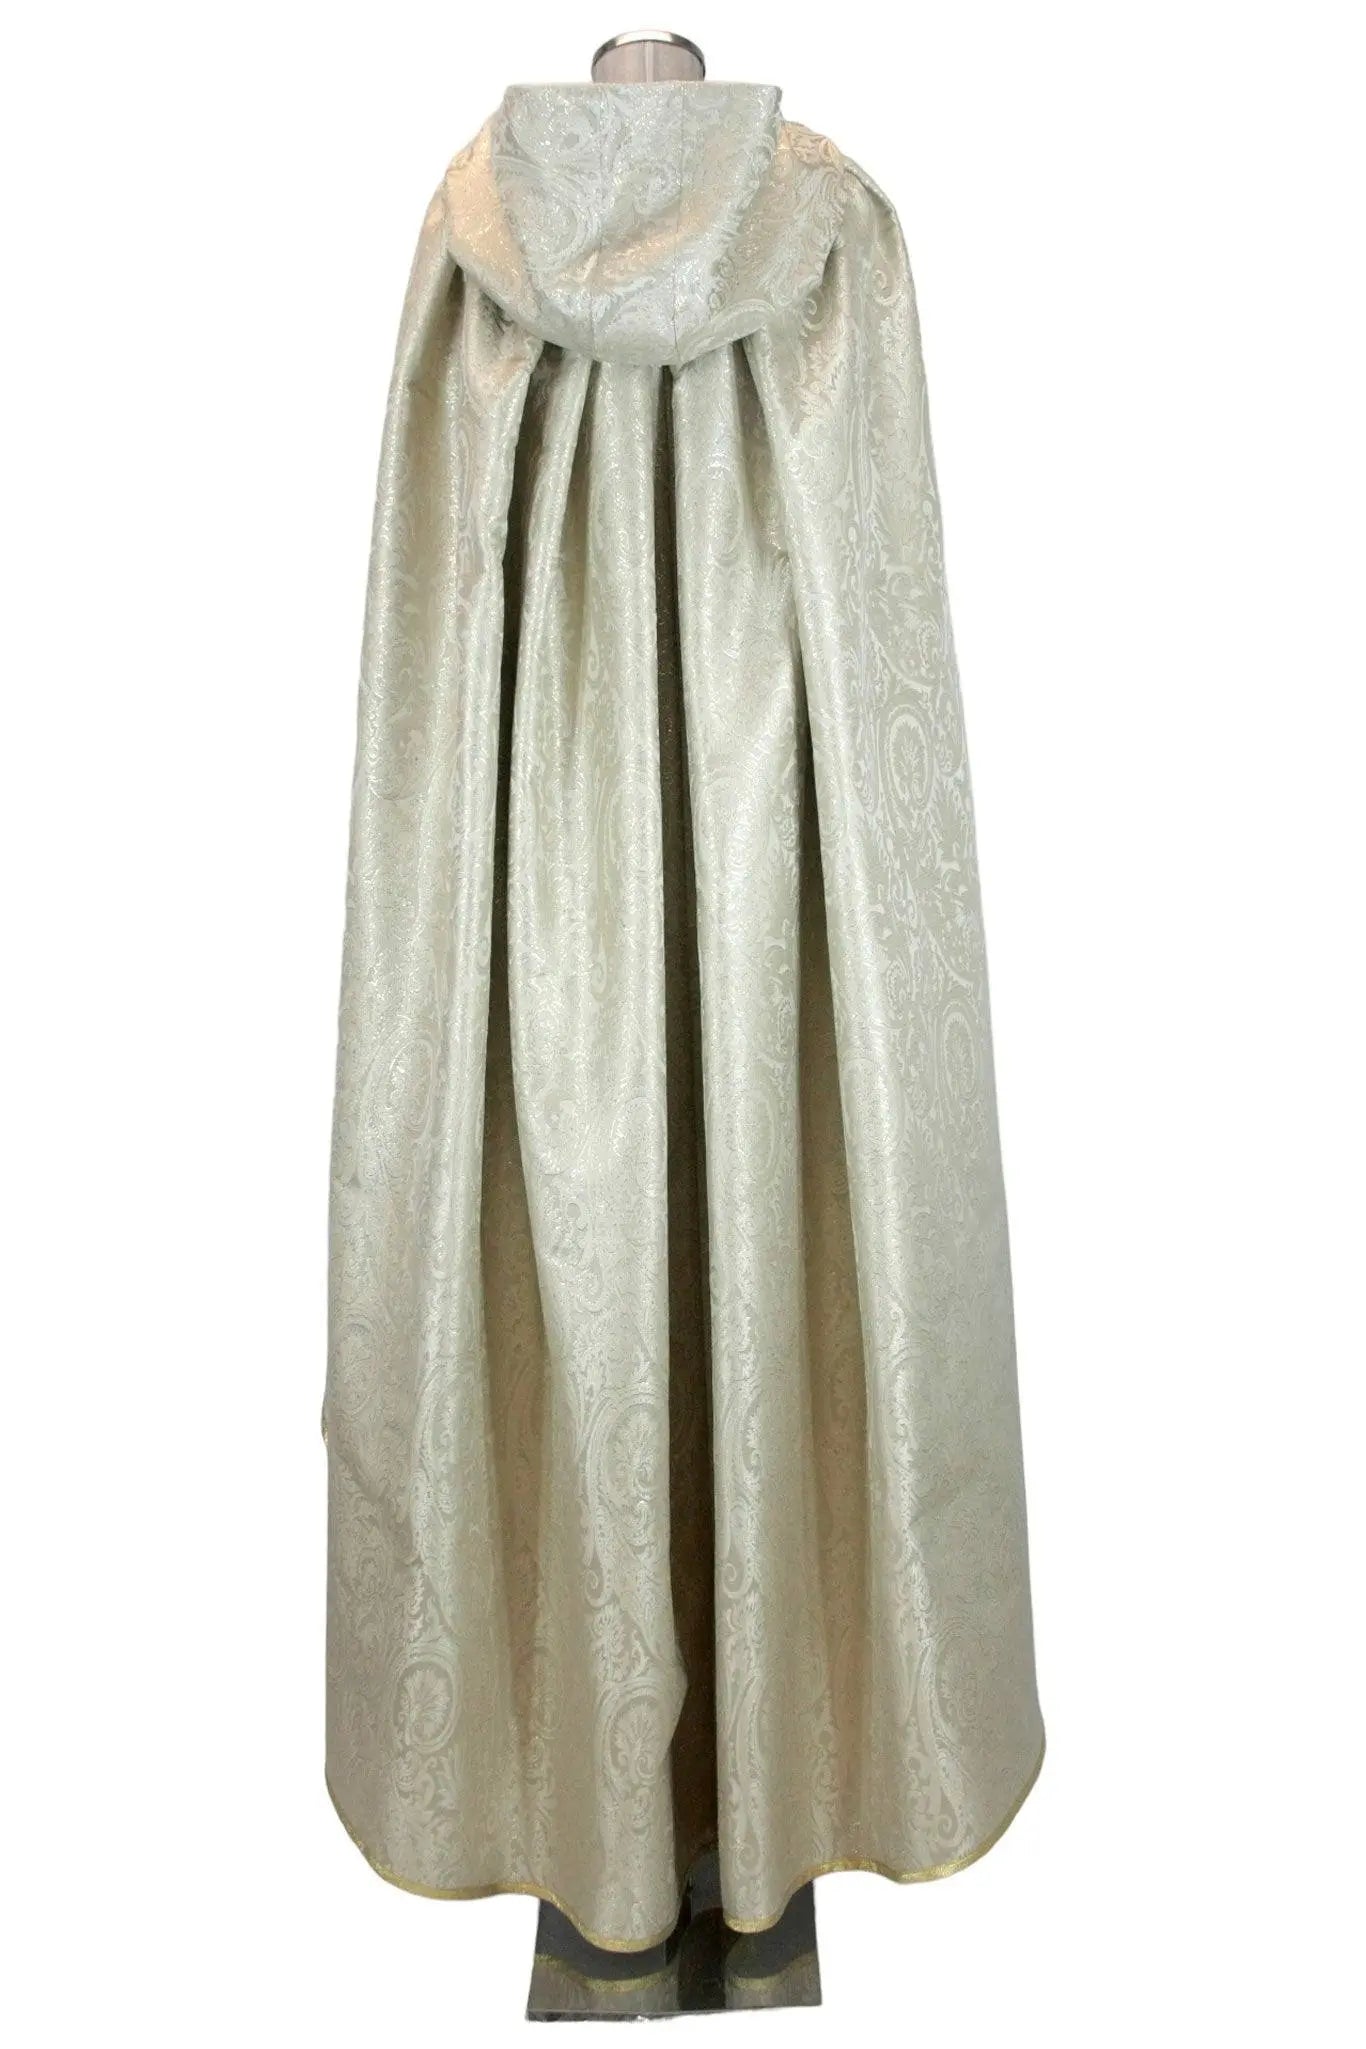 Mantello lungo donna damascato con cappuccio - storico - carnevale